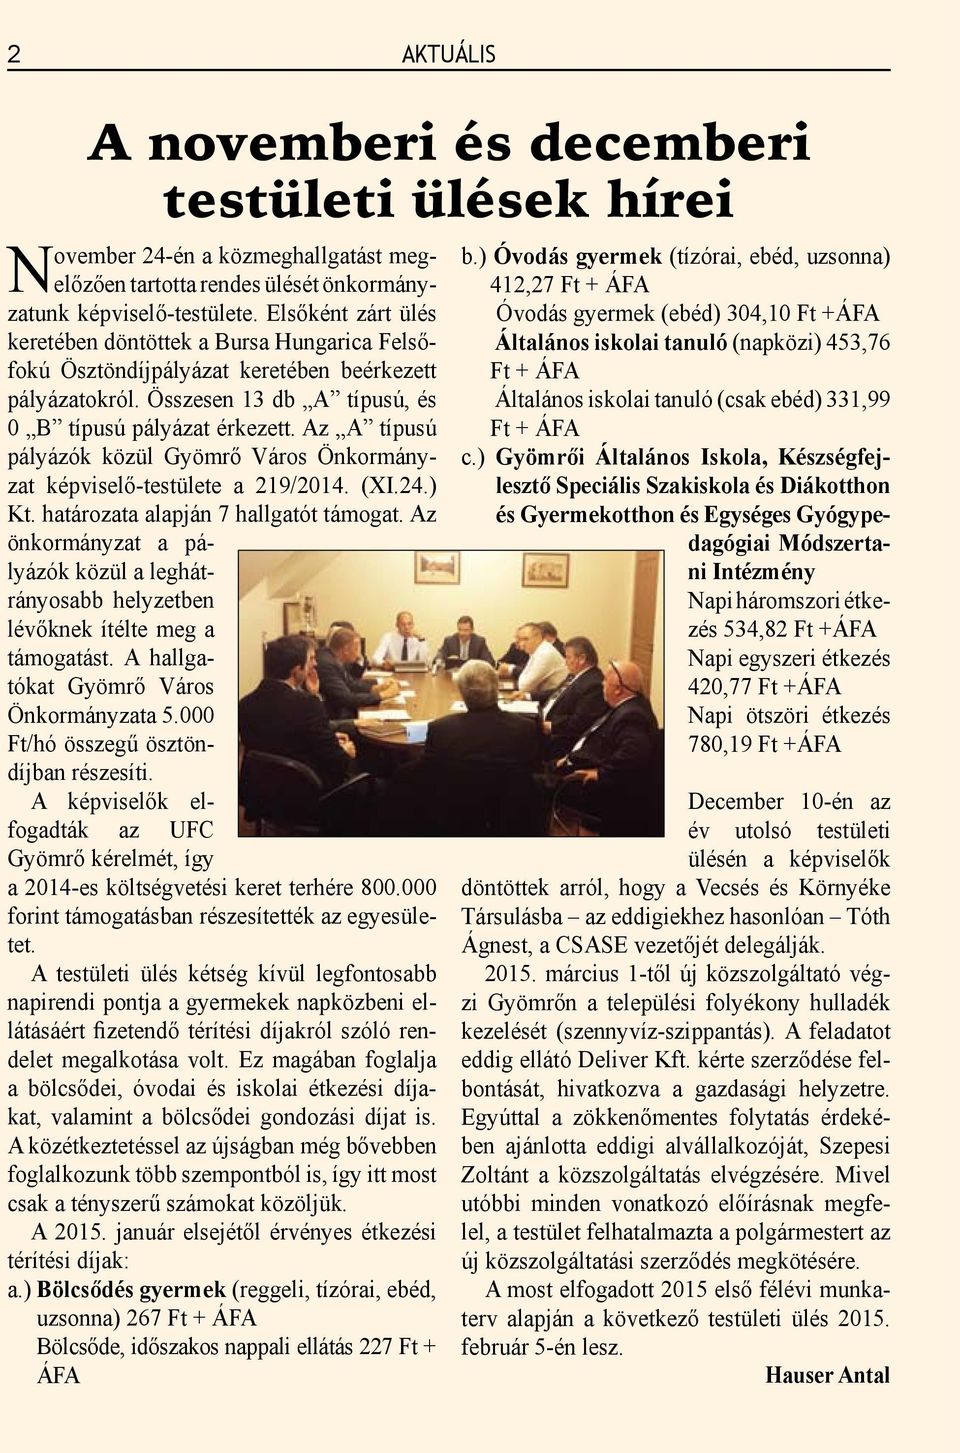 Az A típusú pályázók közül Gyömrő Város Önkormányzat képviselő-testülete a 219/2014. (XI.24.) Kt. határozata alapján 7 hallgatót támogat.